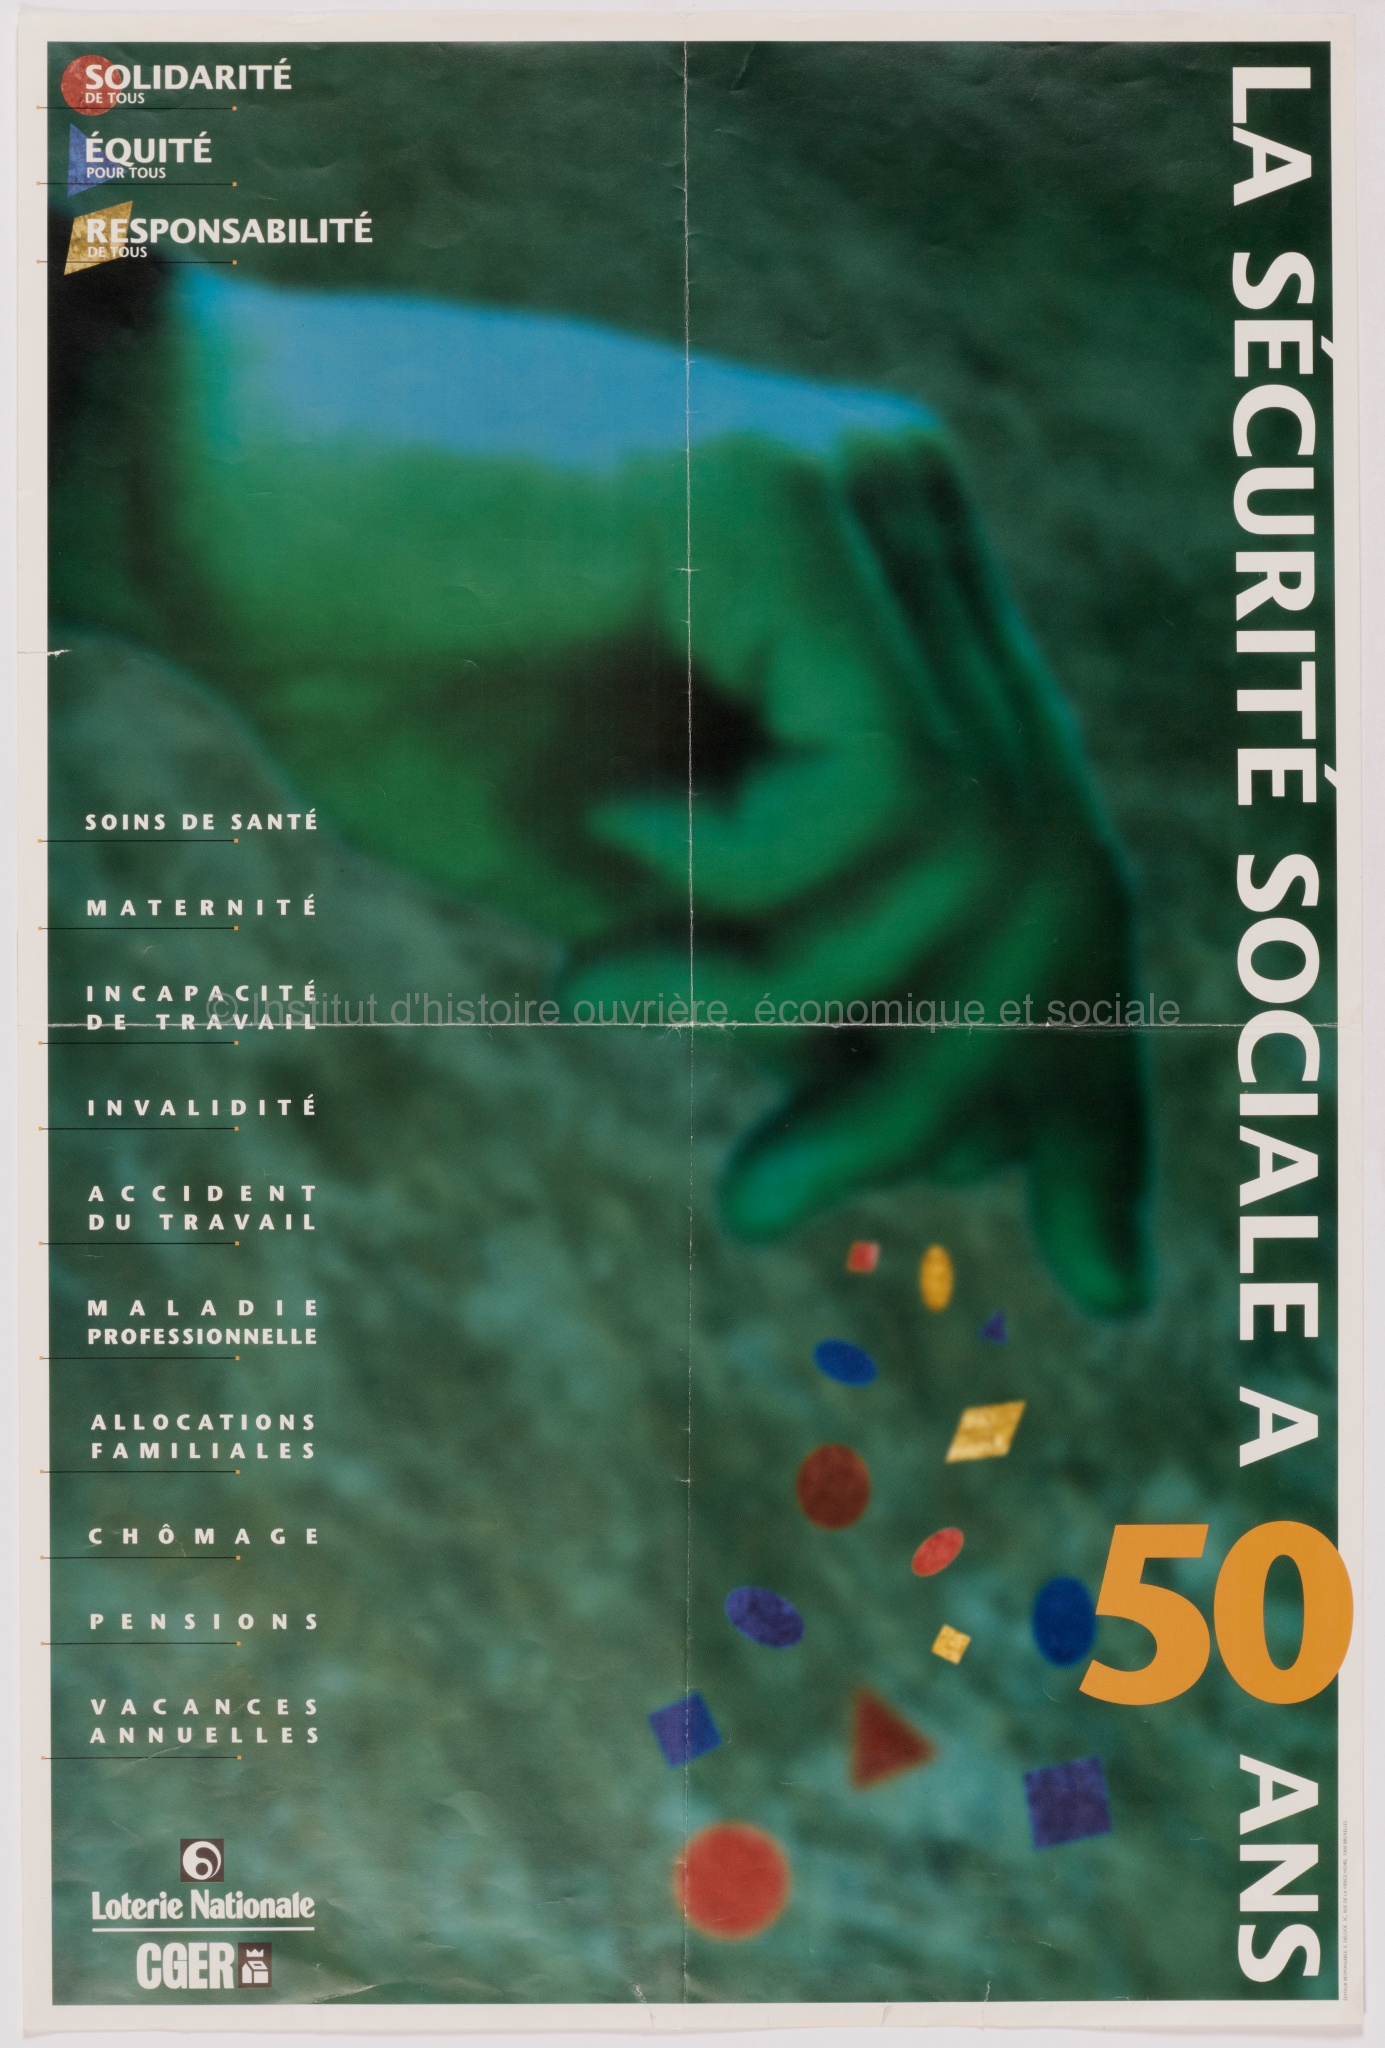 La sécurité sociale a 50 ans : solidarité de tous, équité pour tous, responsabilité de tous